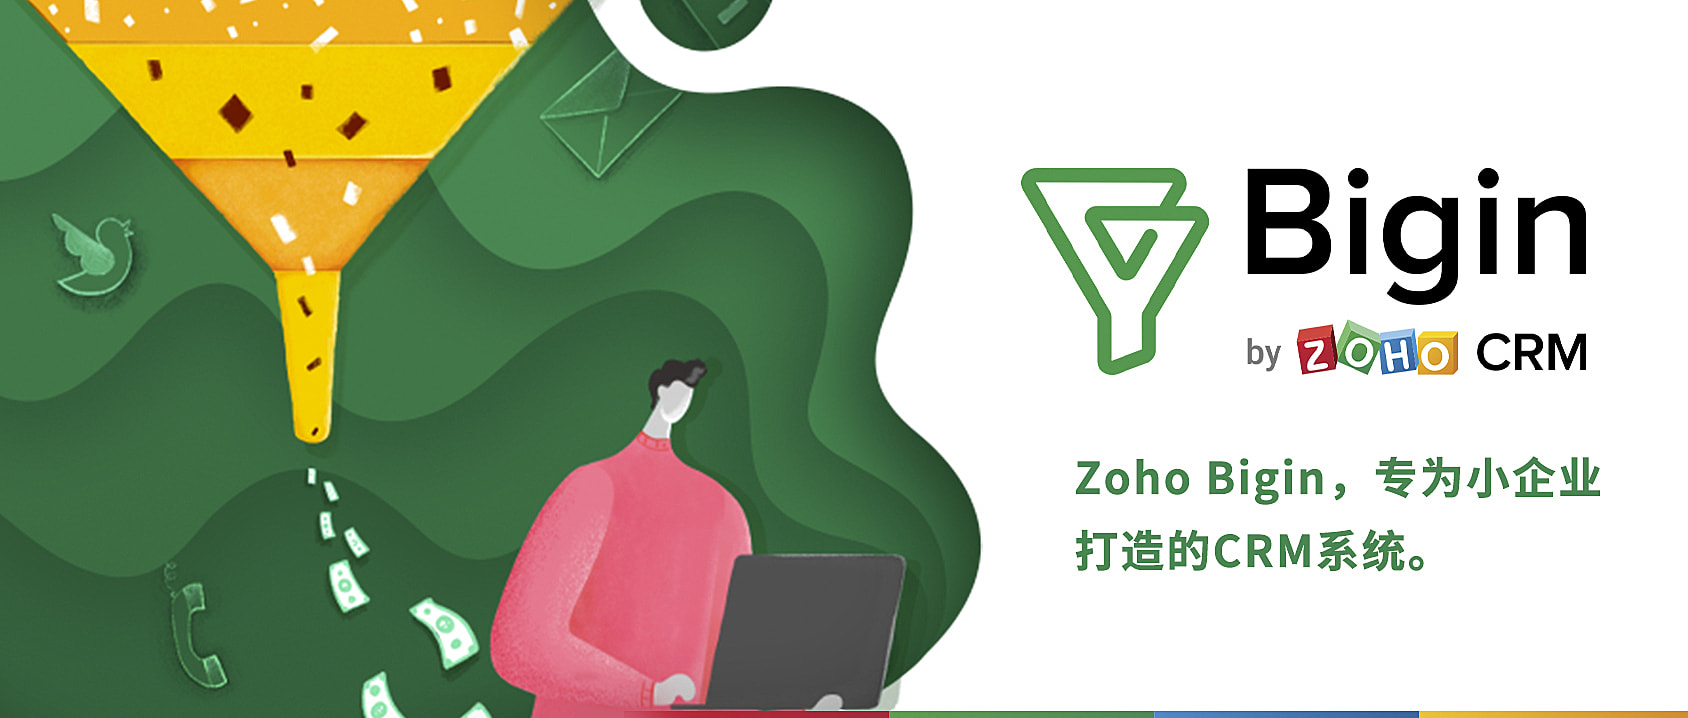 Zoho 小企业CRM推出新版本，一体化管理客户关系